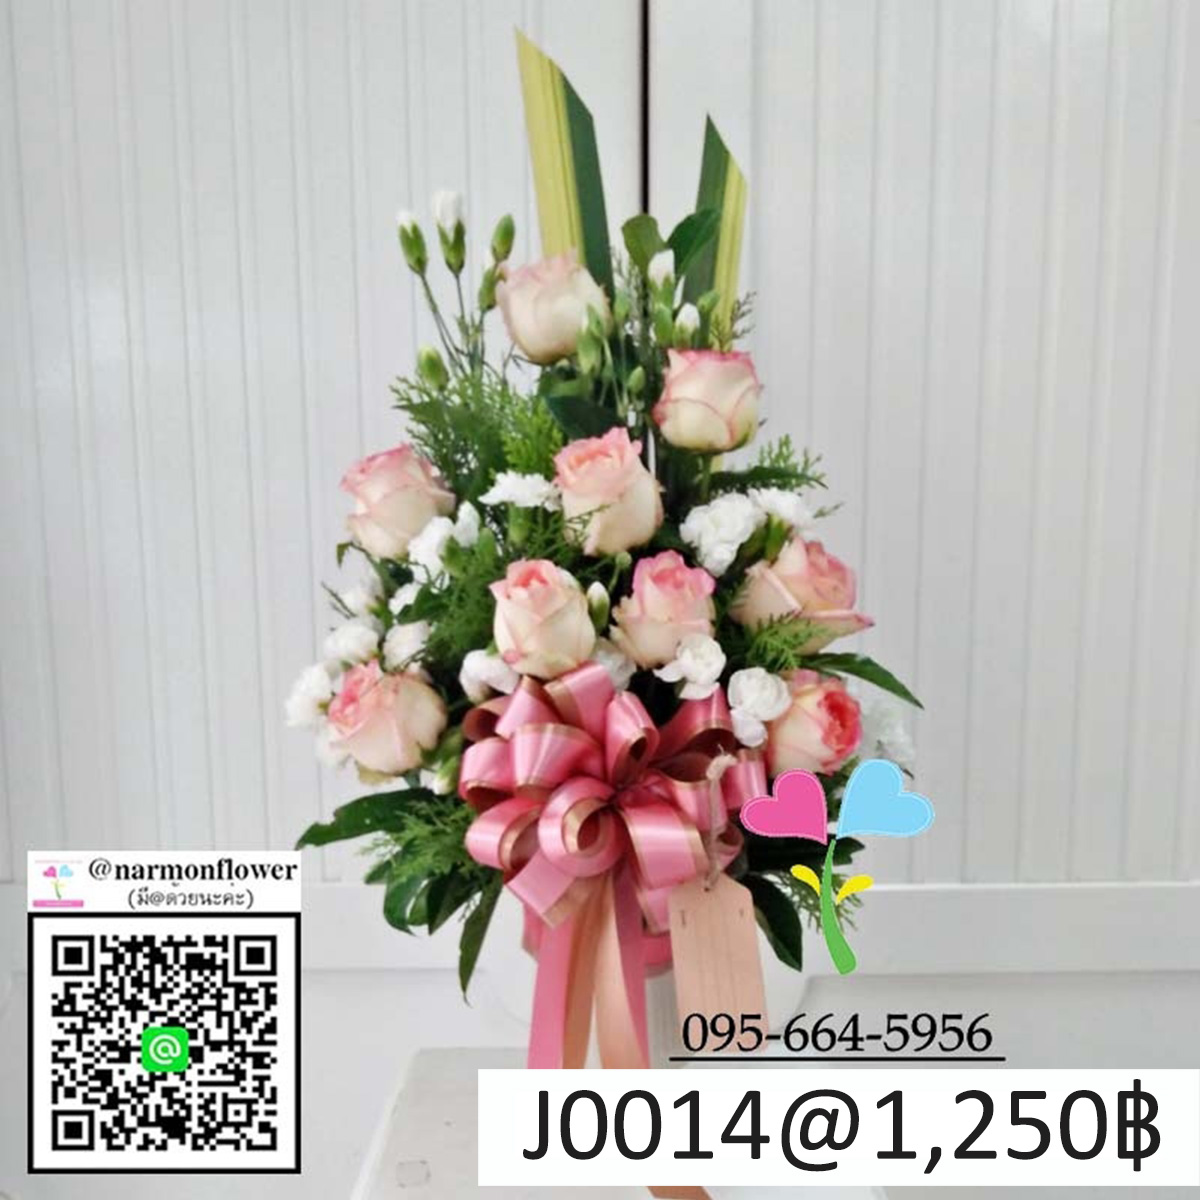 แจกันดอกไม้สด J0014